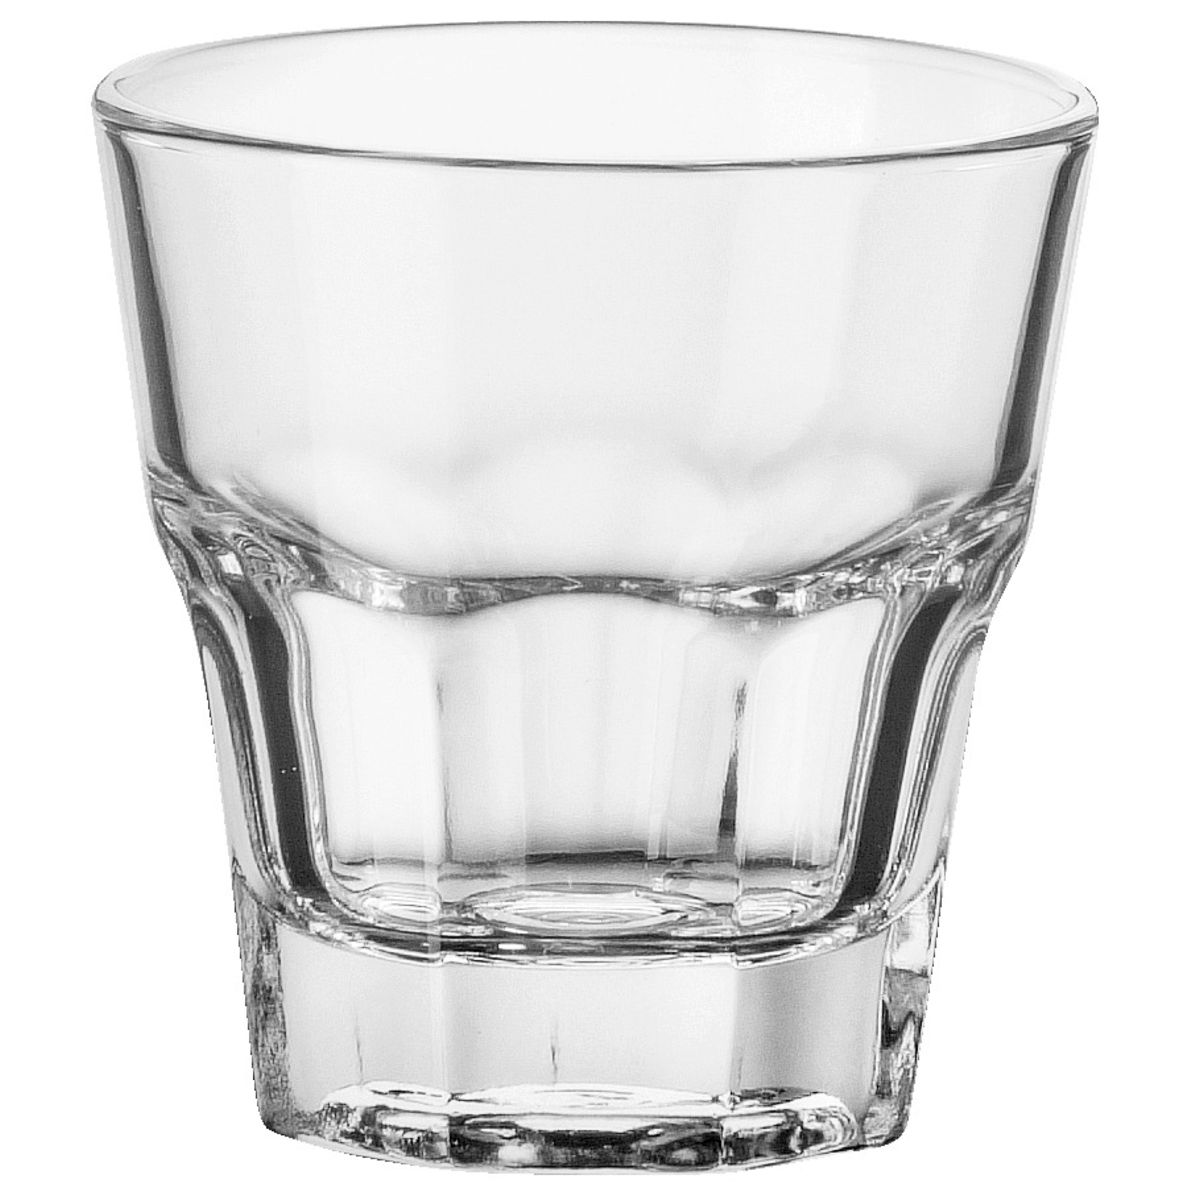 Pasabahçe Glas Casablanca stapelbaar; 140ml, 7x7.6 cm (ØxH); transparant; 12 stuk / verpakking